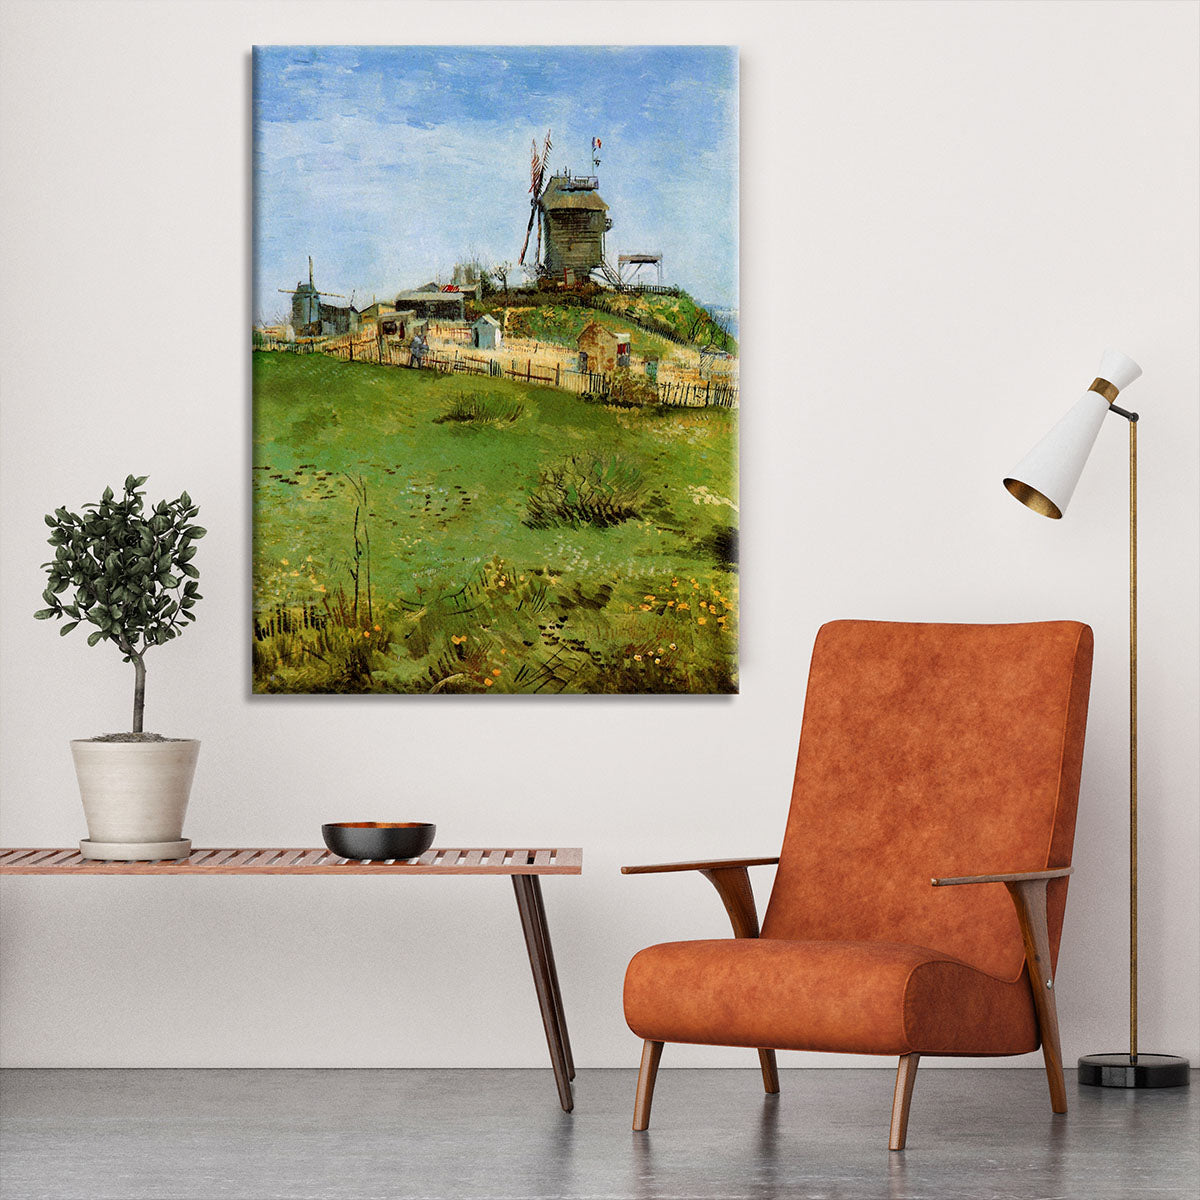 Le Moulin de la Galette 4 by Van Gogh Canvas Print or Poster - Canvas Art Rocks - 6